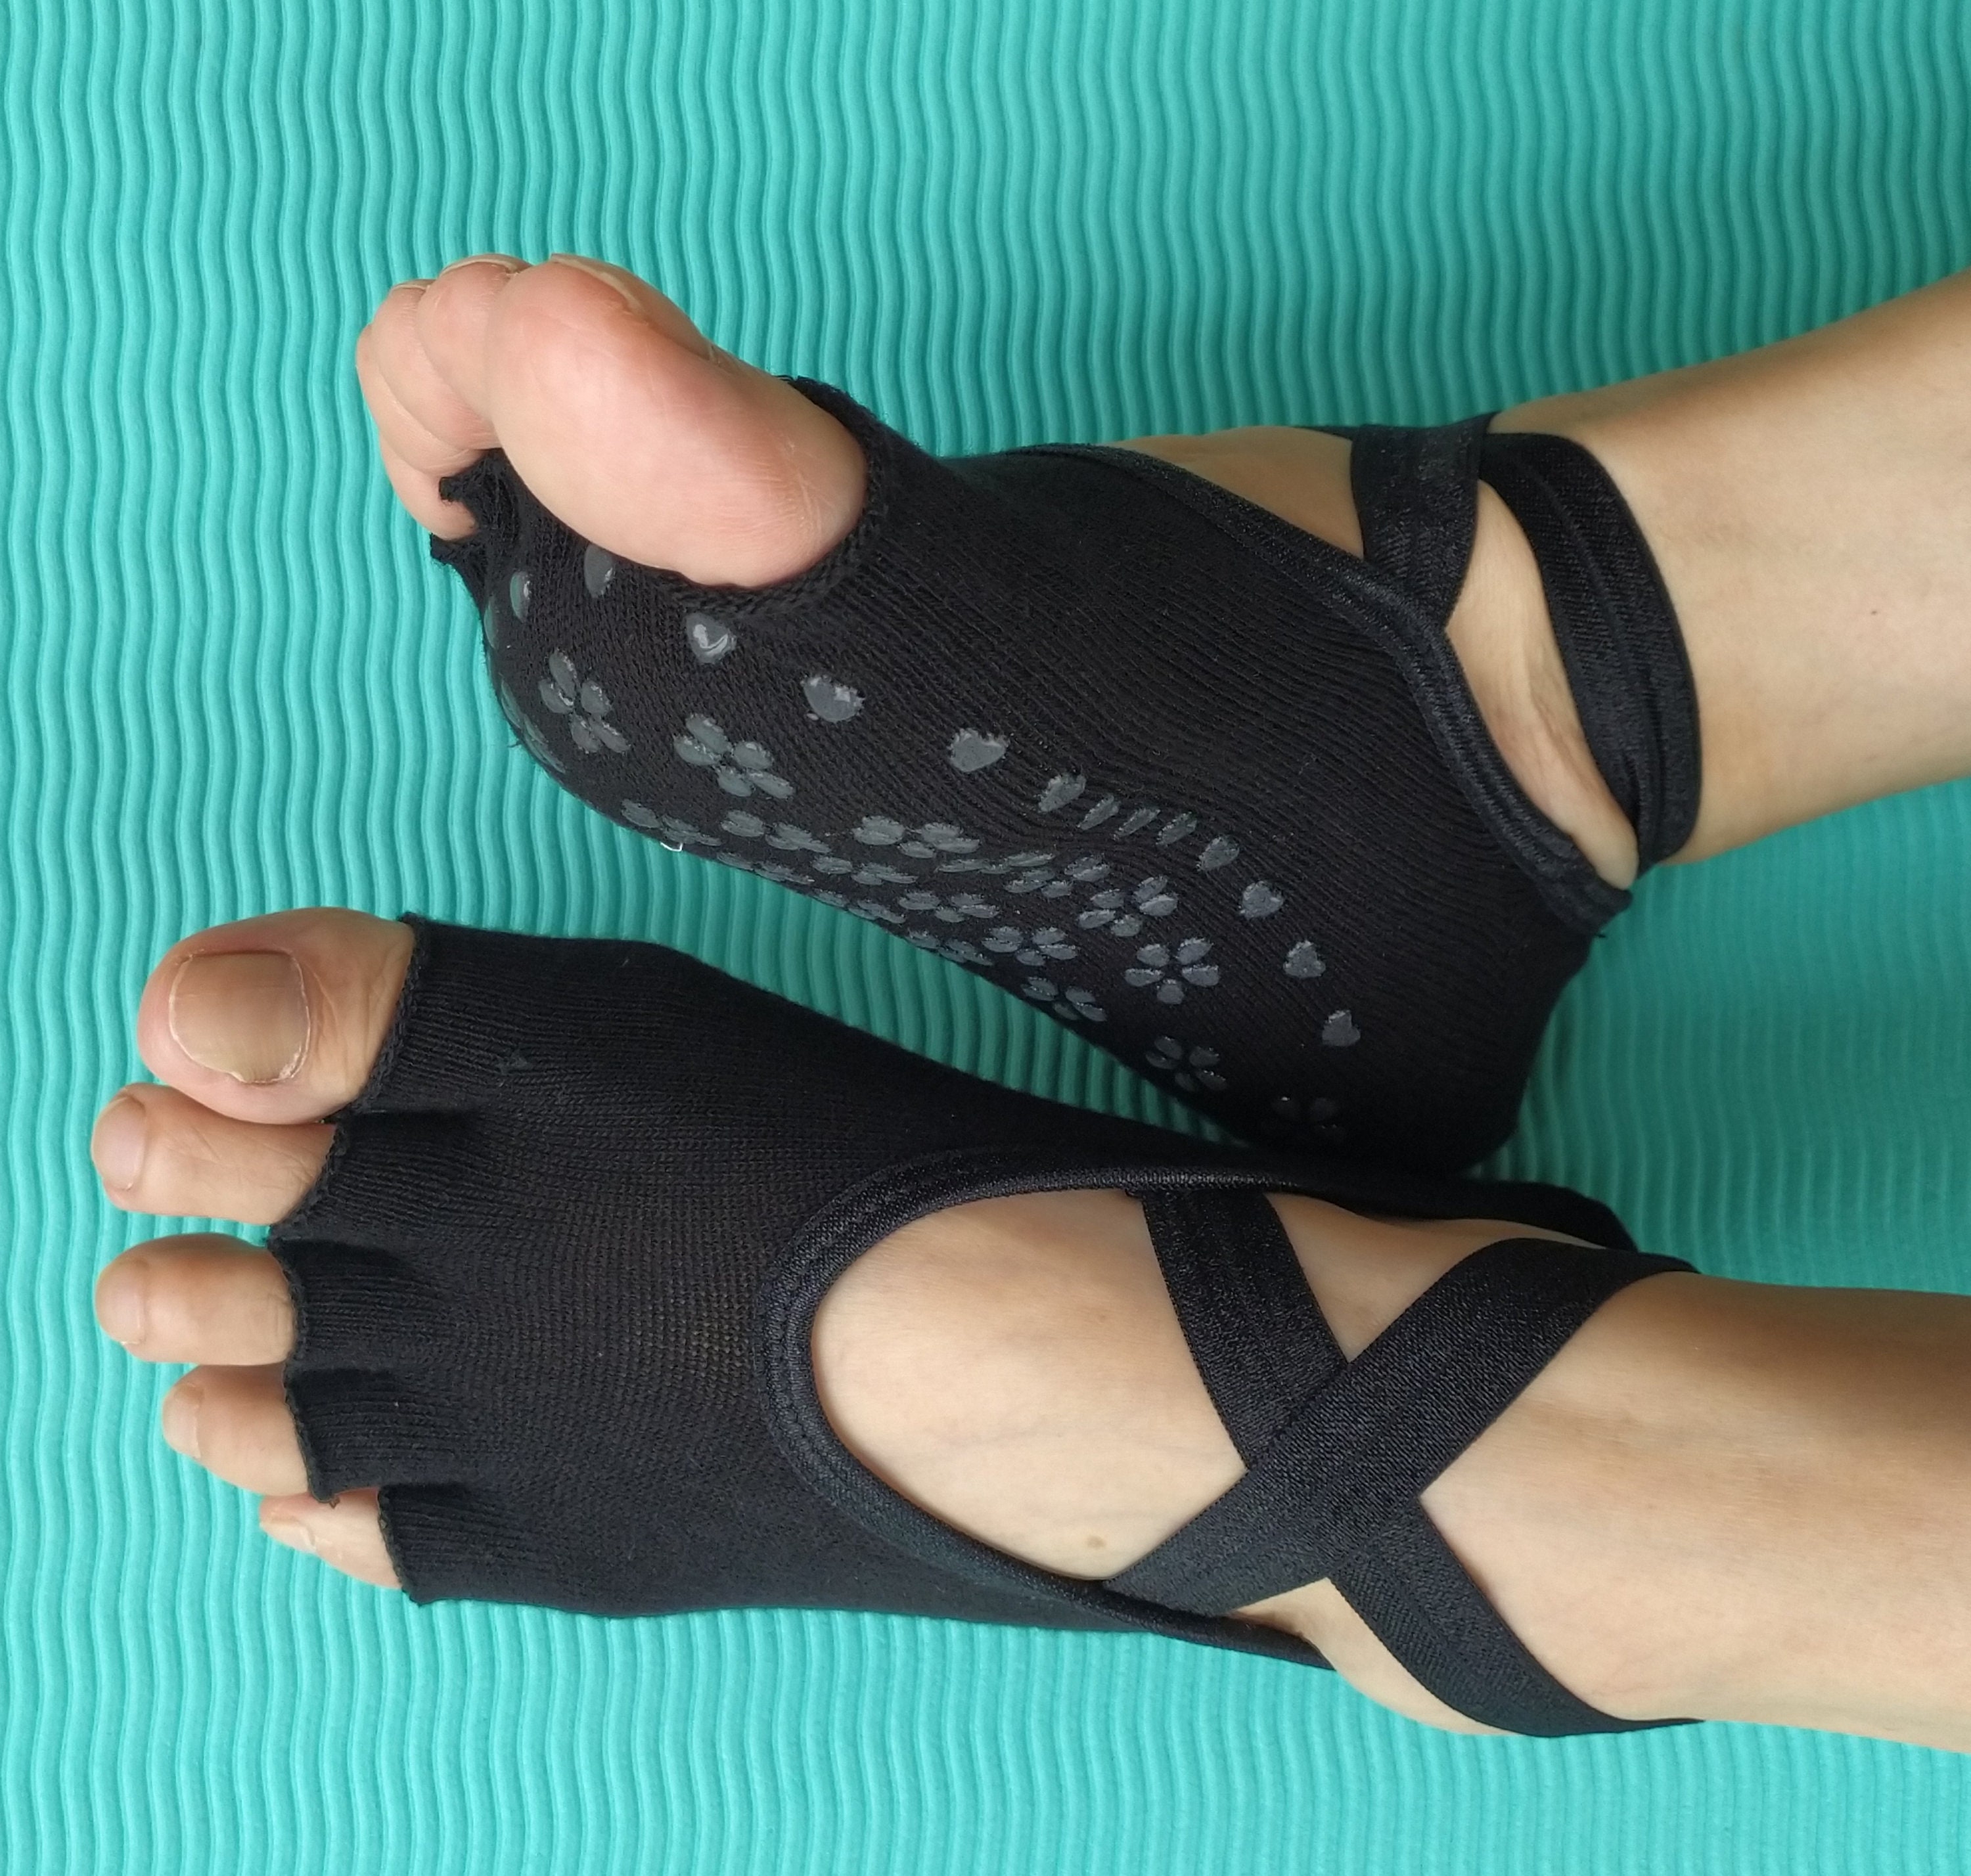 Yoga Socks, Gripped Yoga Socks, Non-slip Pilates Socks, Gripped